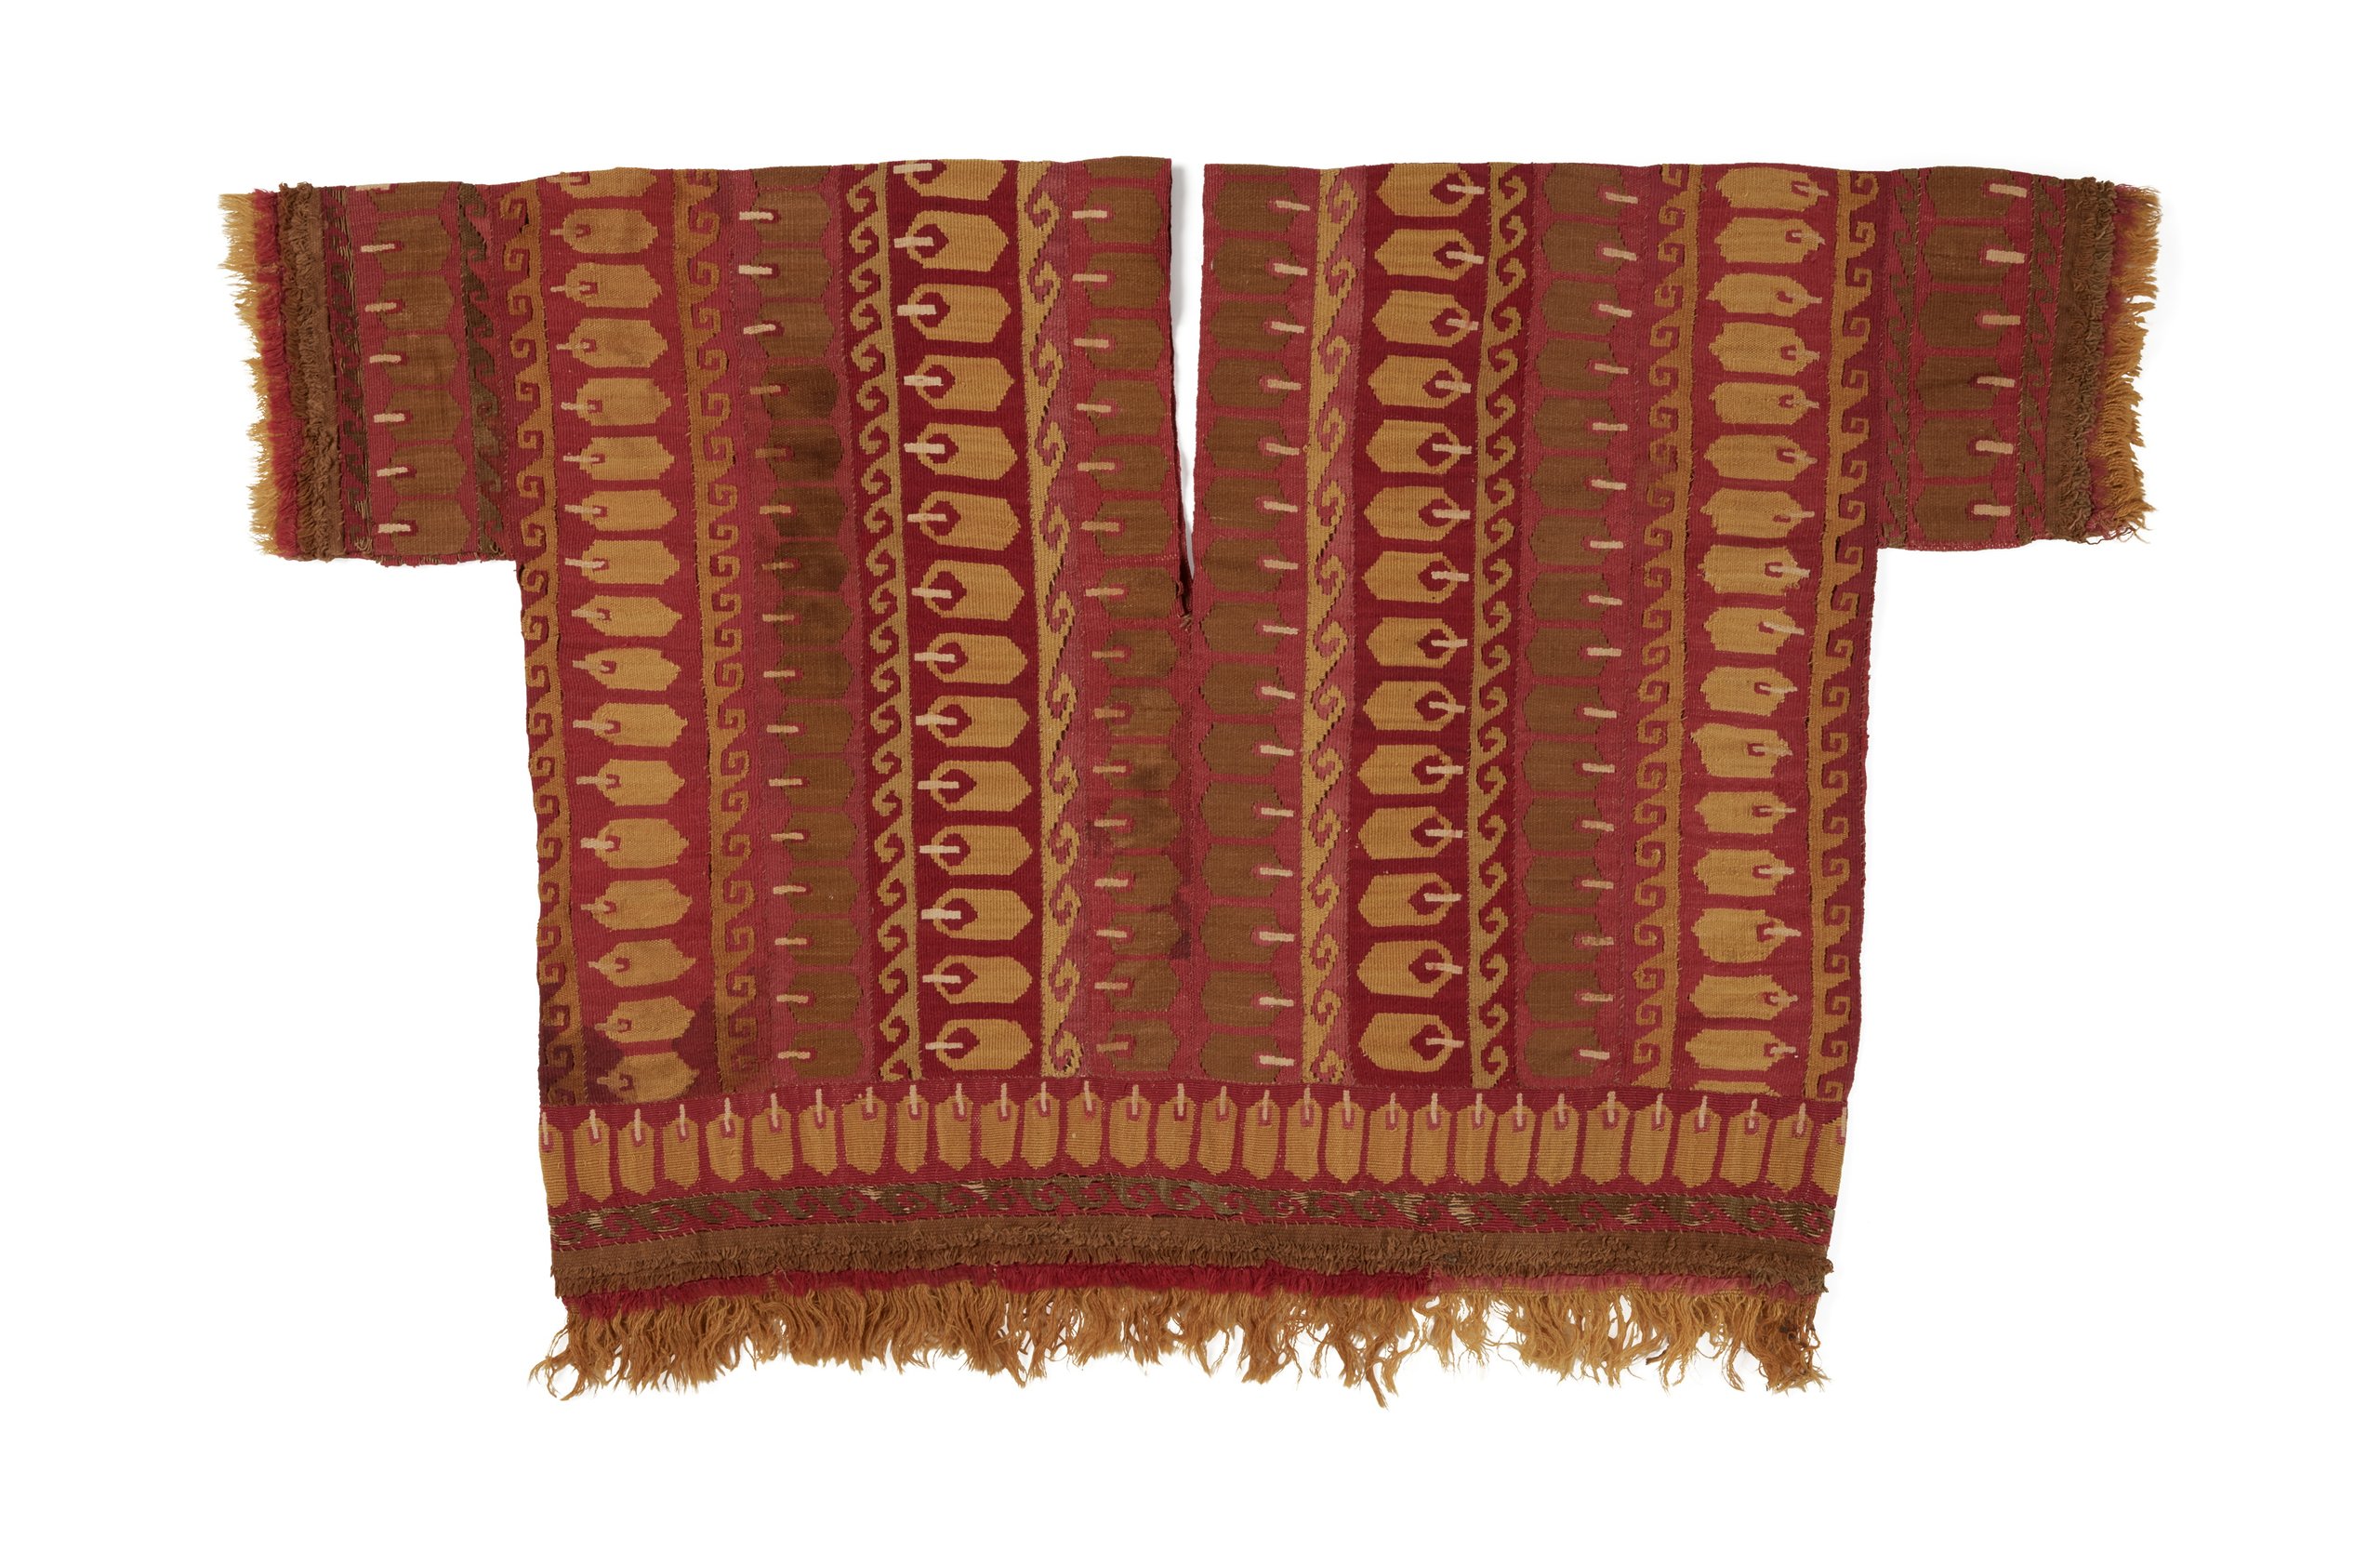 Alpaca tunic from Pre-Columbian Peru